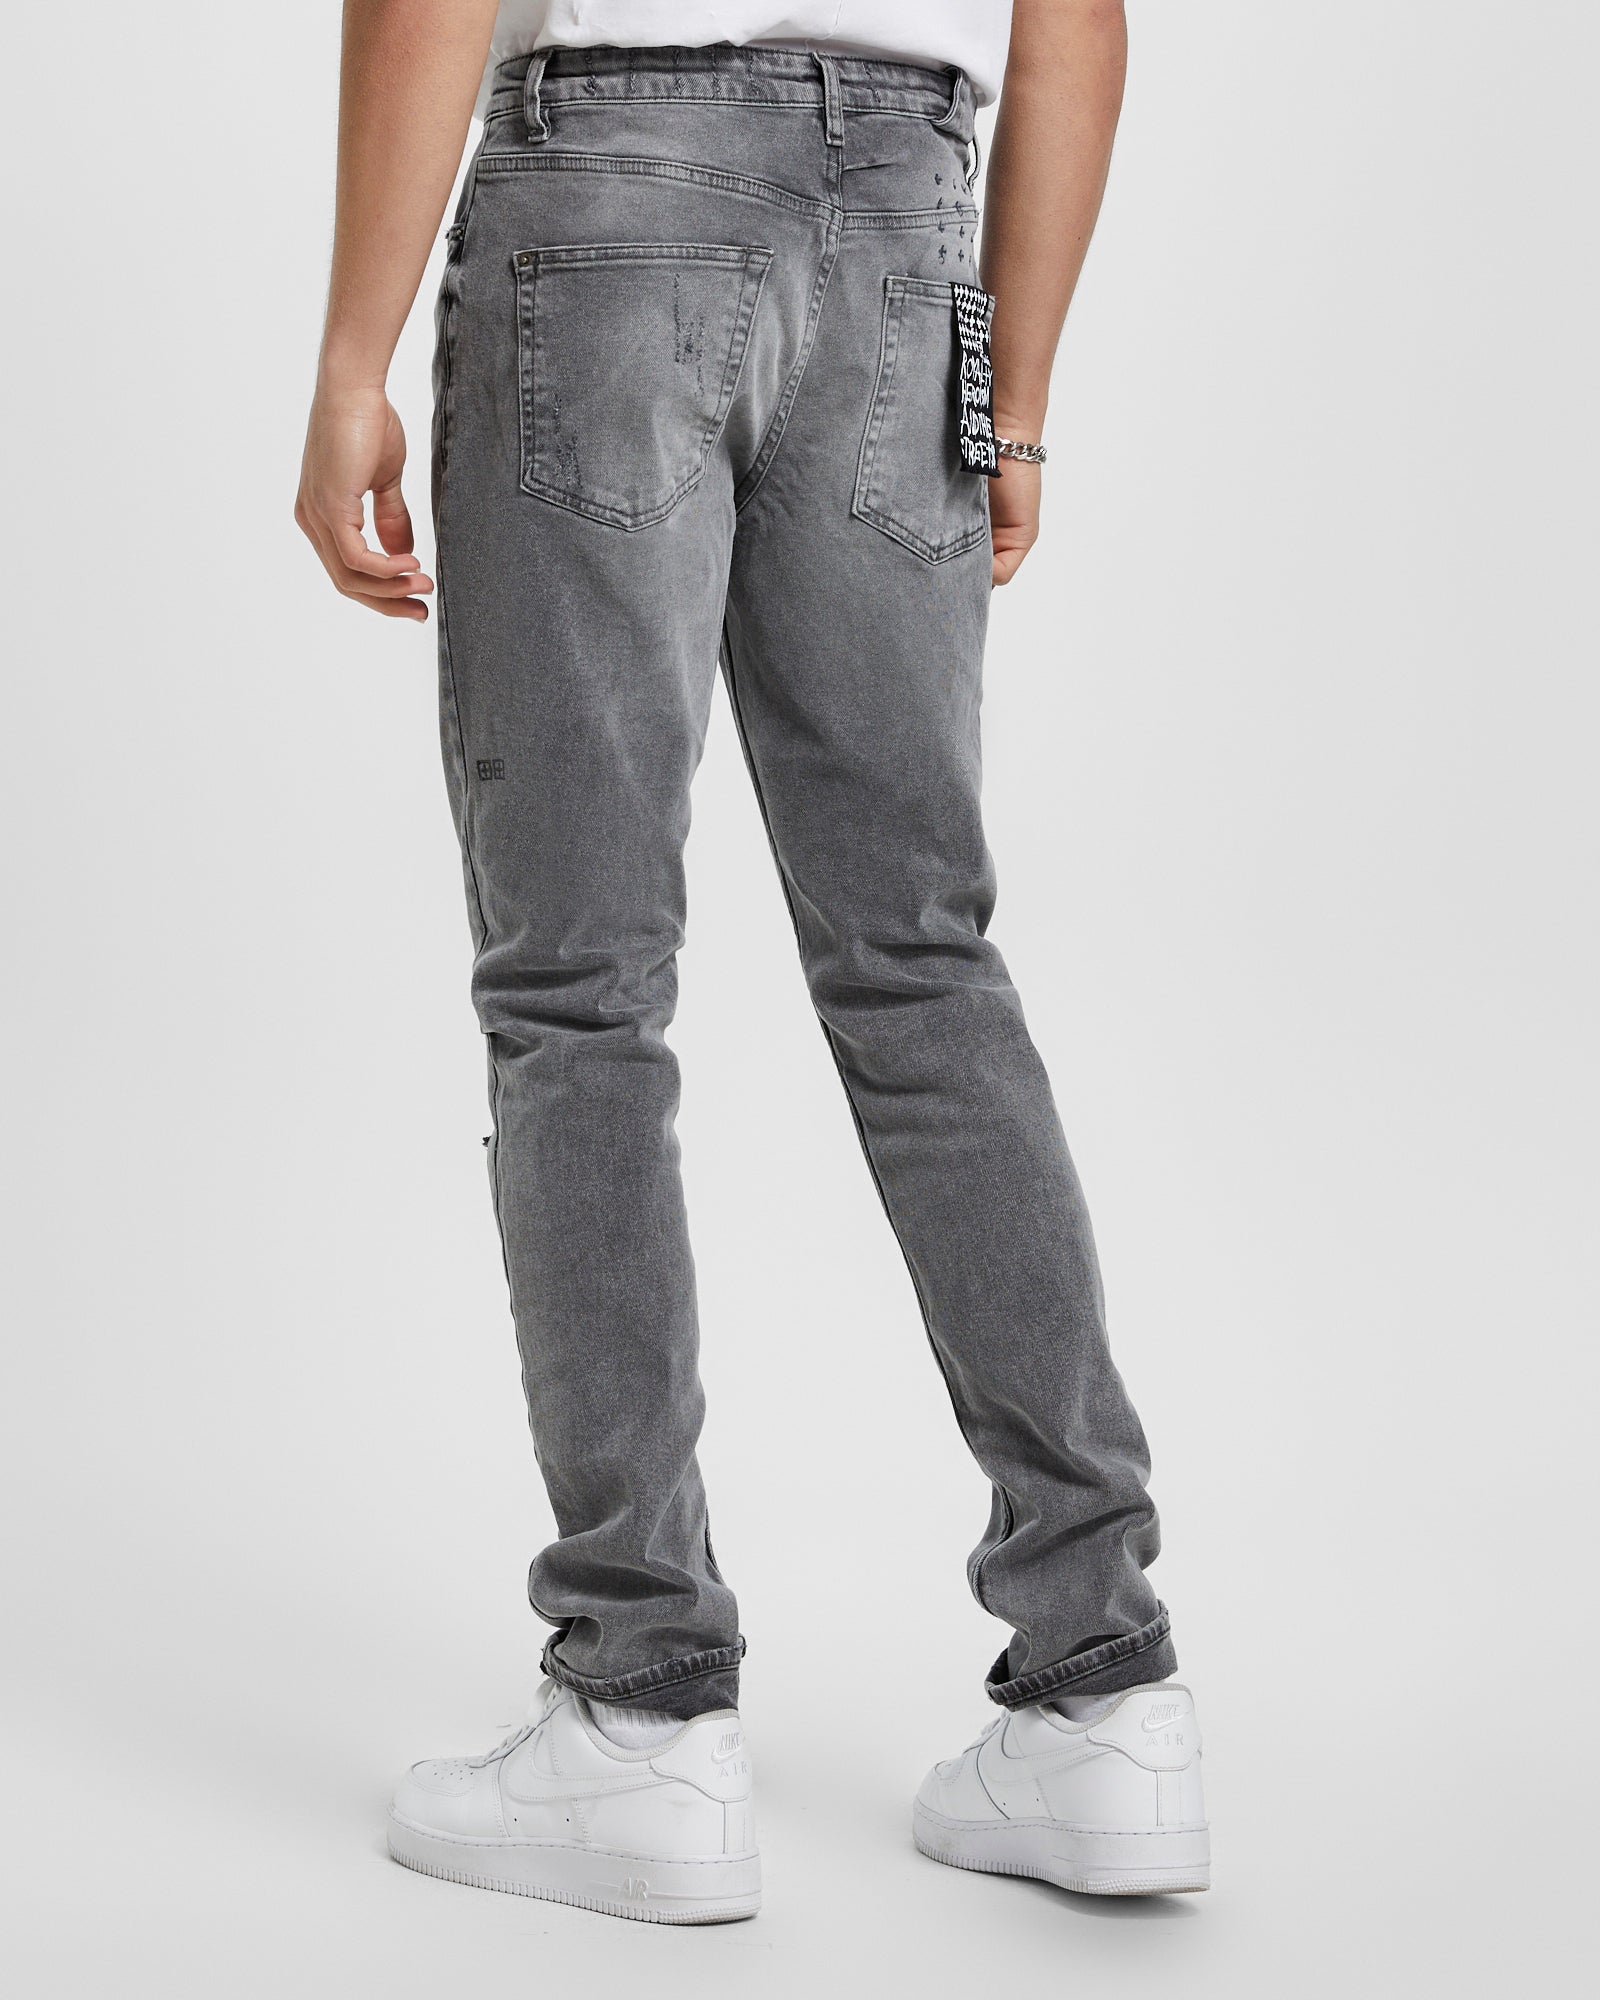 Men's Grey Jeans